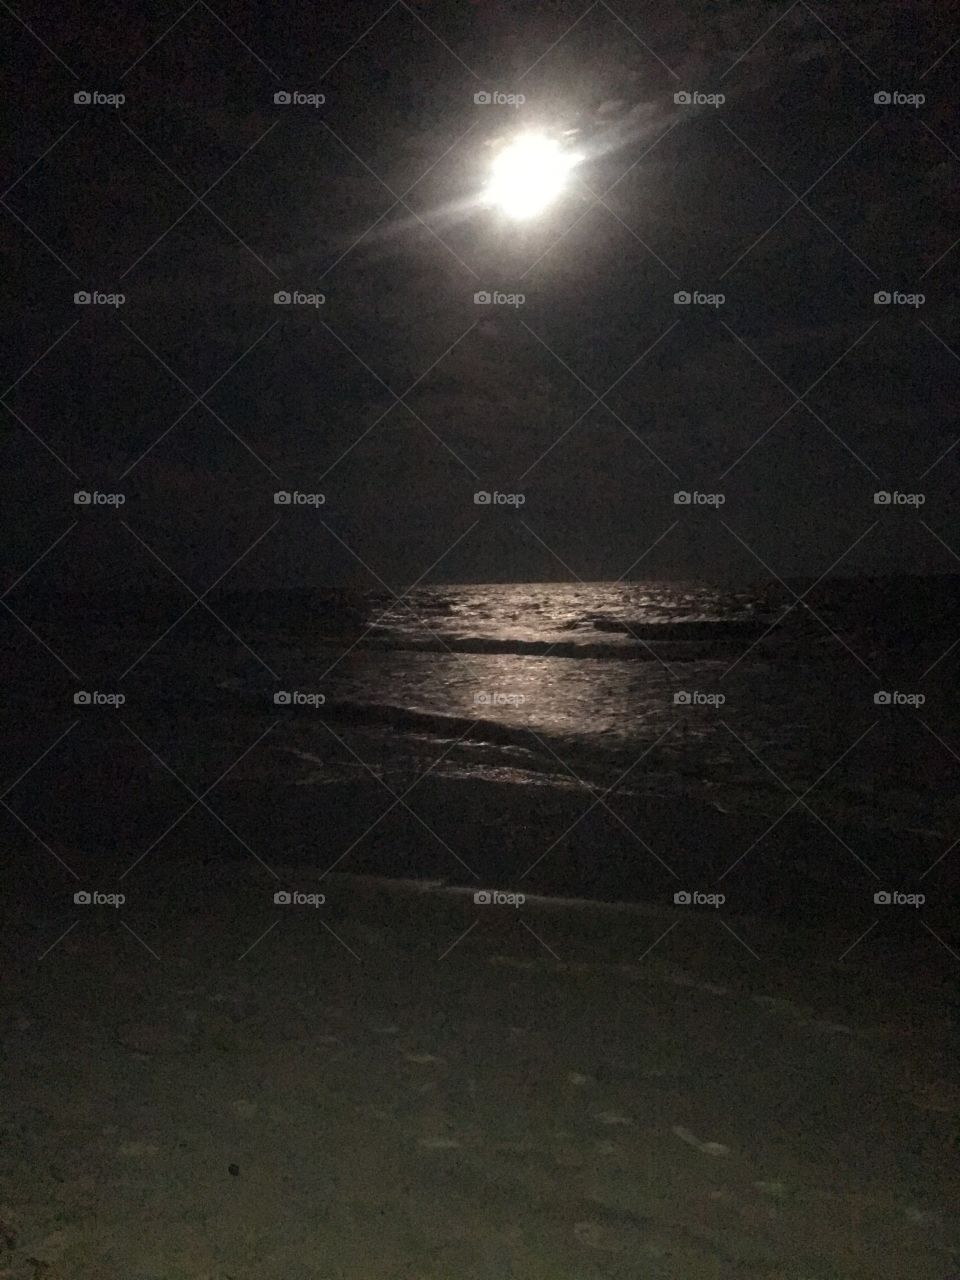 Moon over the ocean